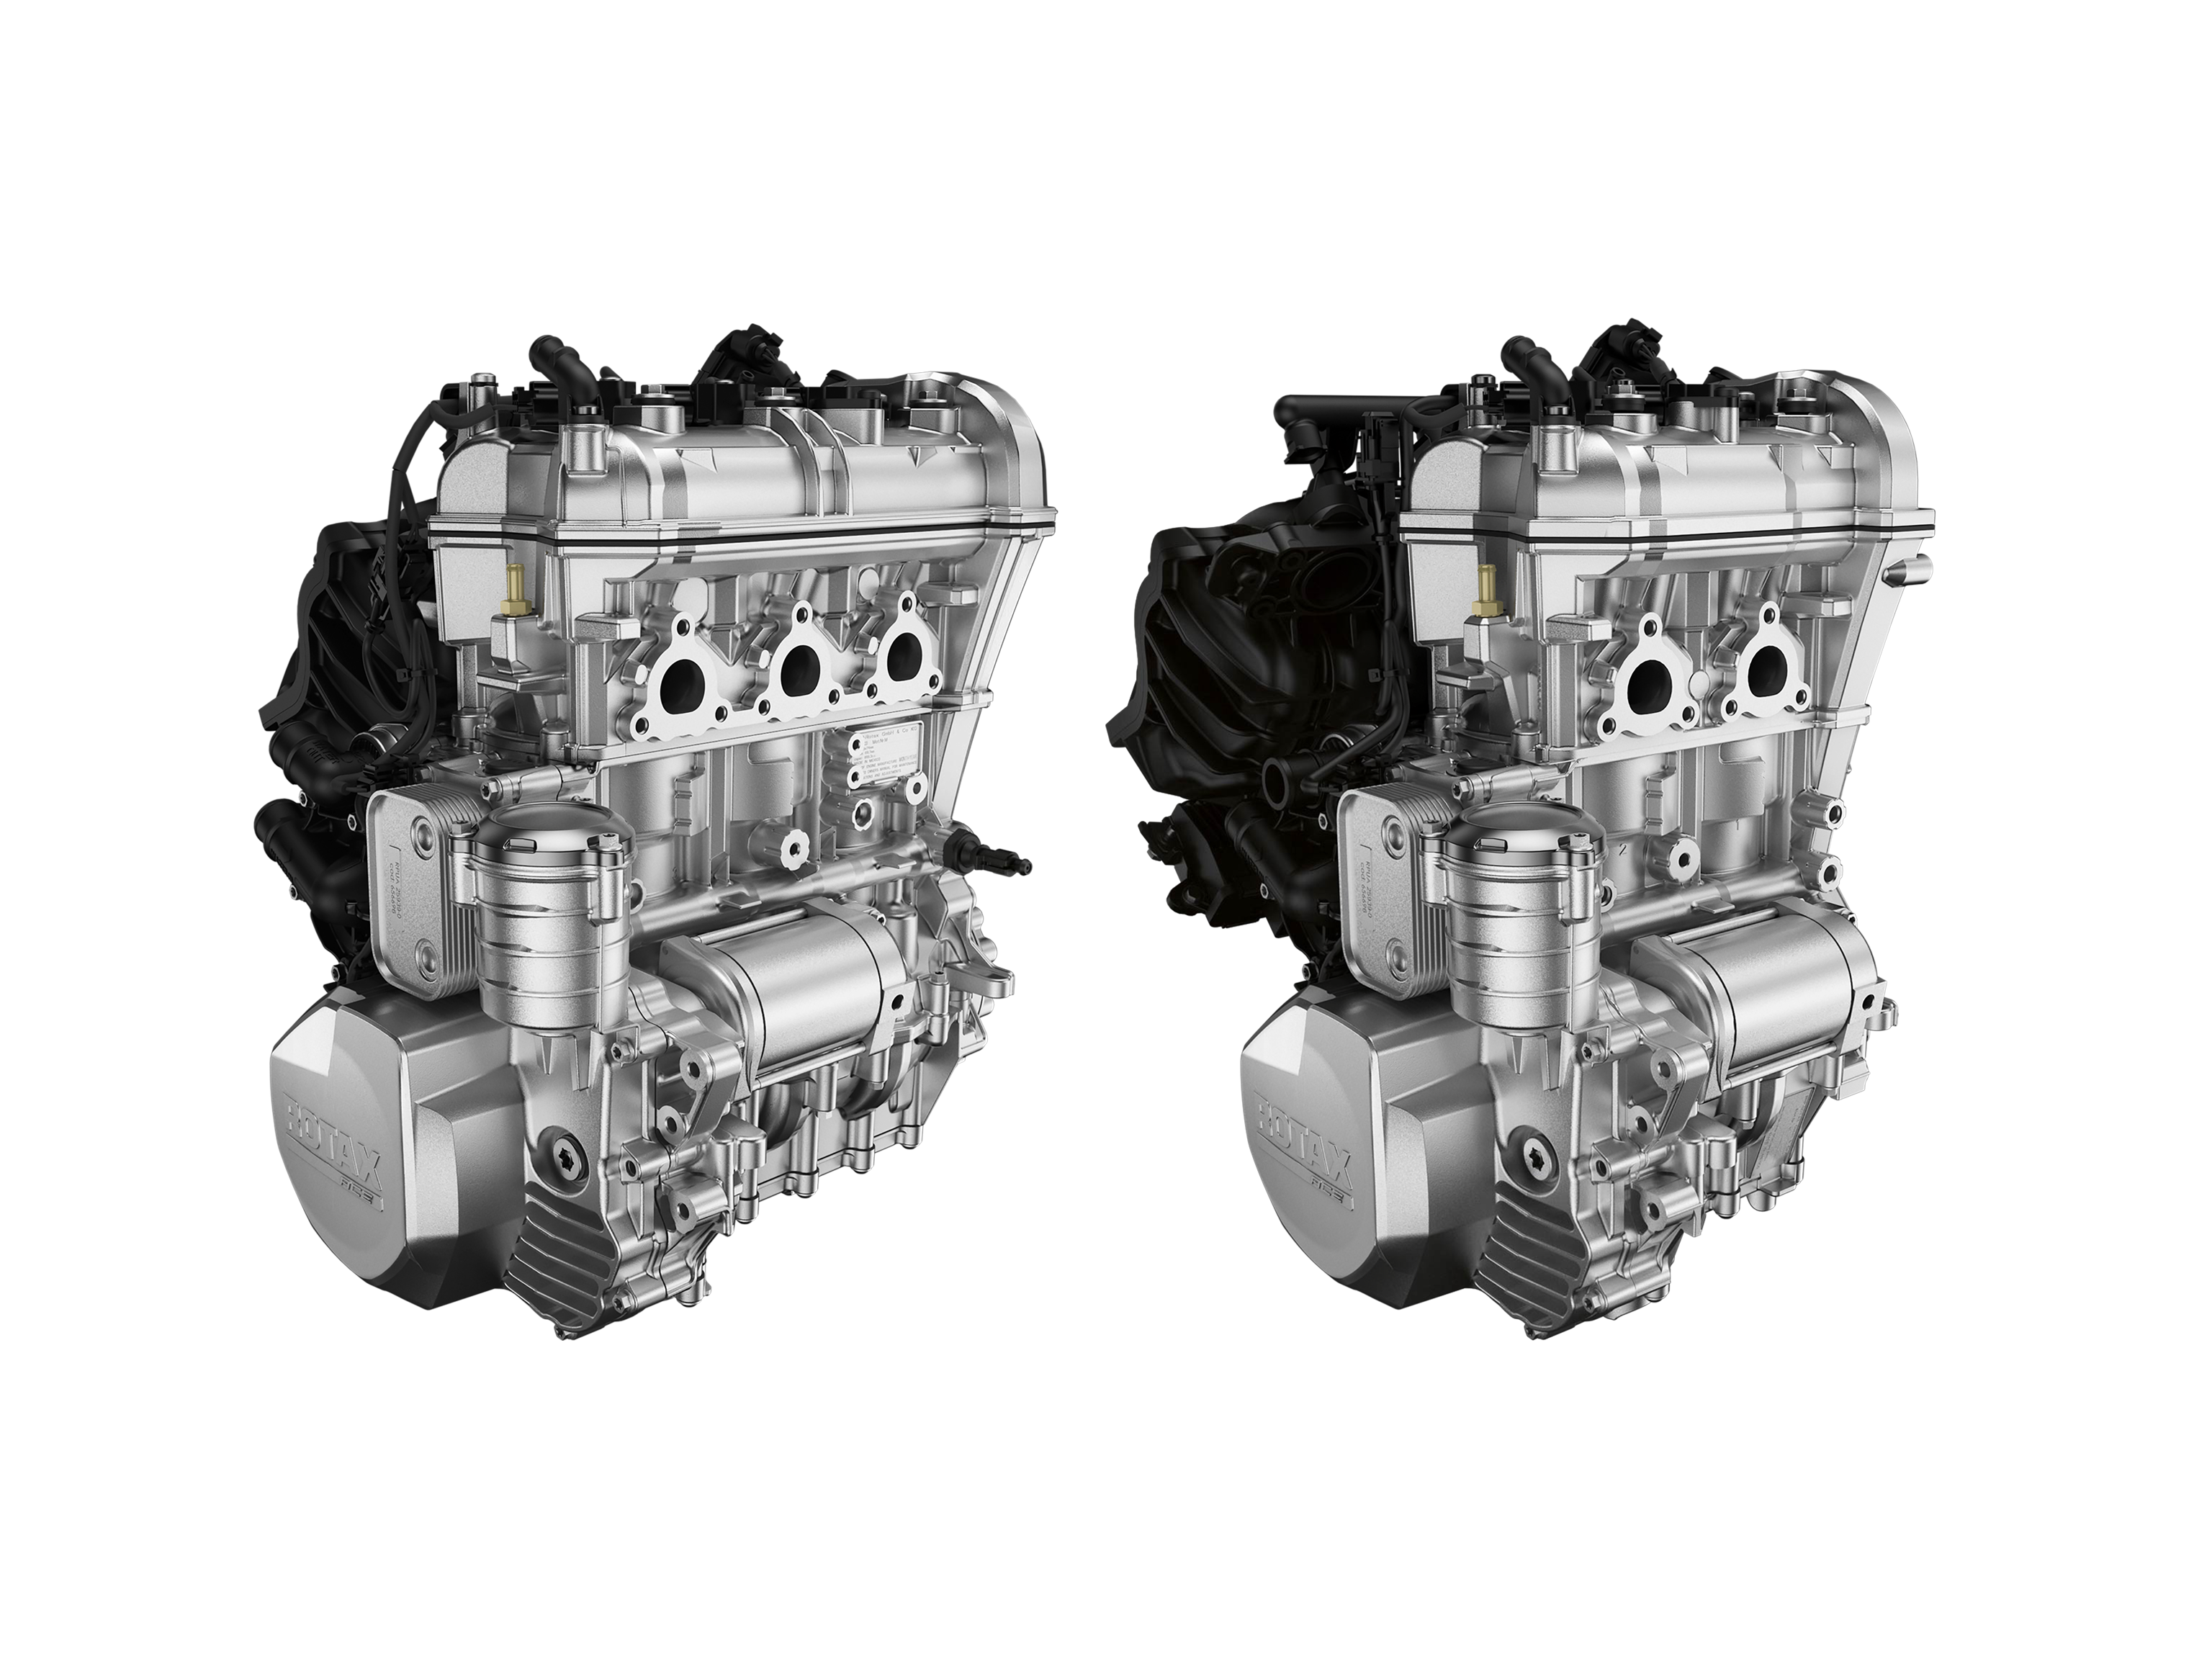 Hvězdná pověst motoru Rotax, který se vyznačuje vysokým výkonem, vynikající spotřebou a naprosto osvědčenou spolehlivostí, z něj činí jedinou volbu pro zábavnou řadu silničních tříkolek Can-Am Ryker. Dvouválcový motor Rotax 600 ACE představuje nejvyšší dostupný výkon, zatímco tříválcový motor Rotax 900 ACE je standardem výkonu a vzrušení.